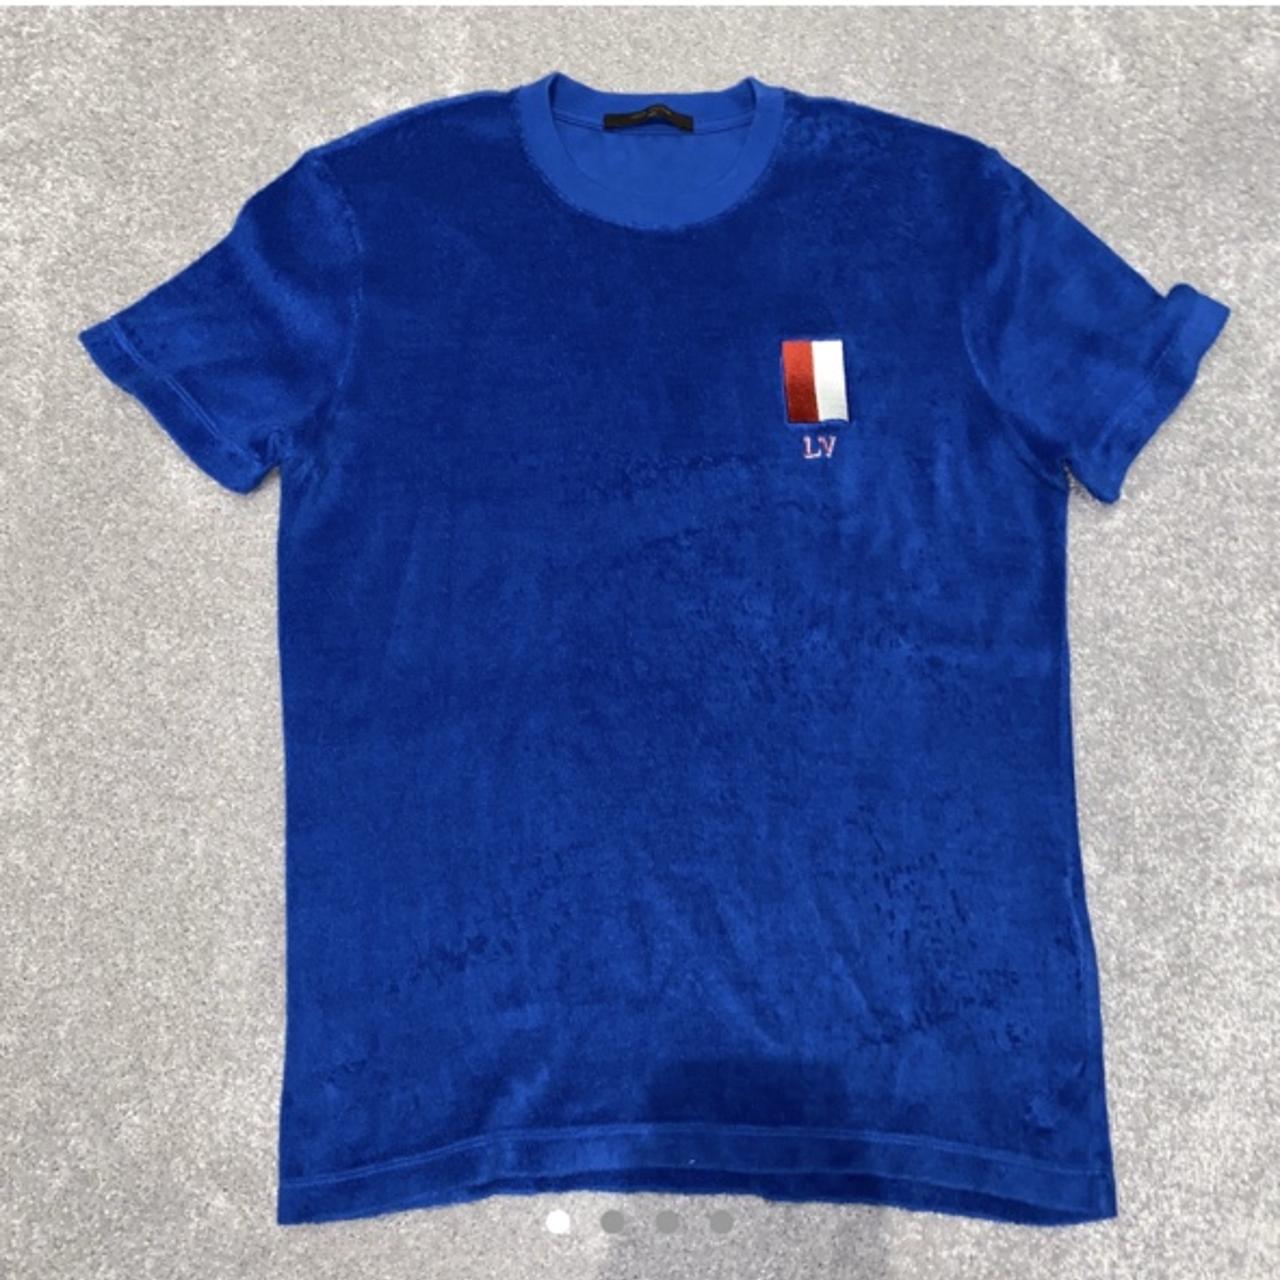 Louis Vuitton T-shirt (originally 650$) #louis - Depop